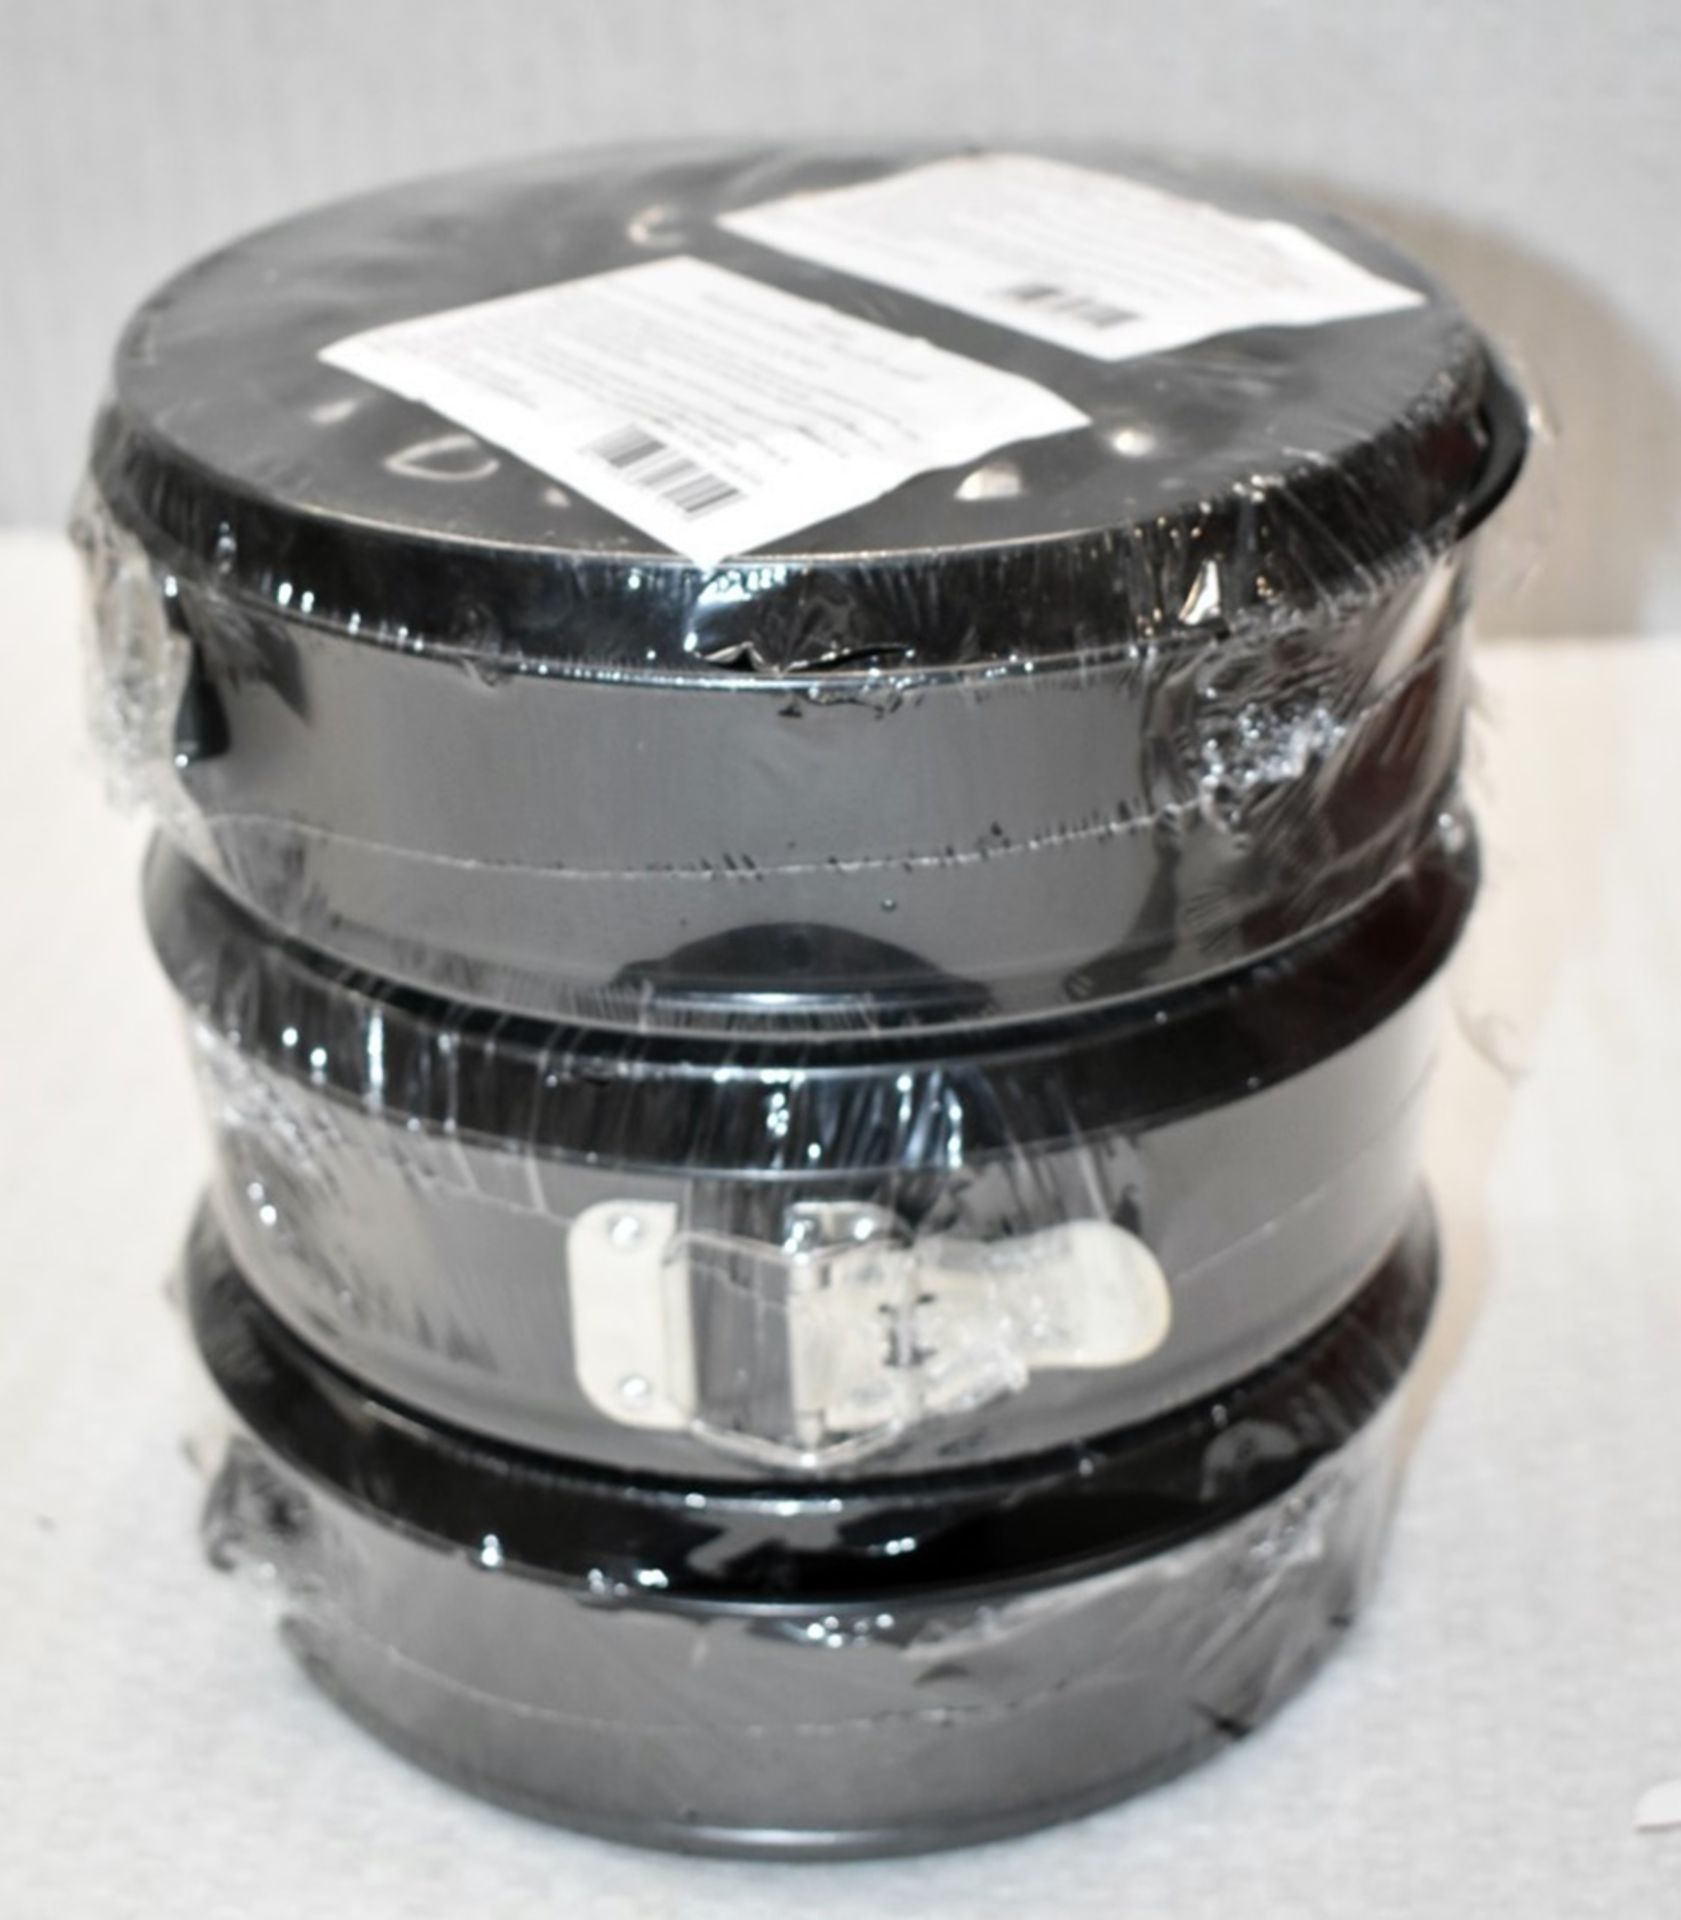 JOB LOT of 15 x MATFER 'Exopan' Professional Spring Form Mold Baking Cake Tins - Unused Sealed Stock - Image 3 of 6